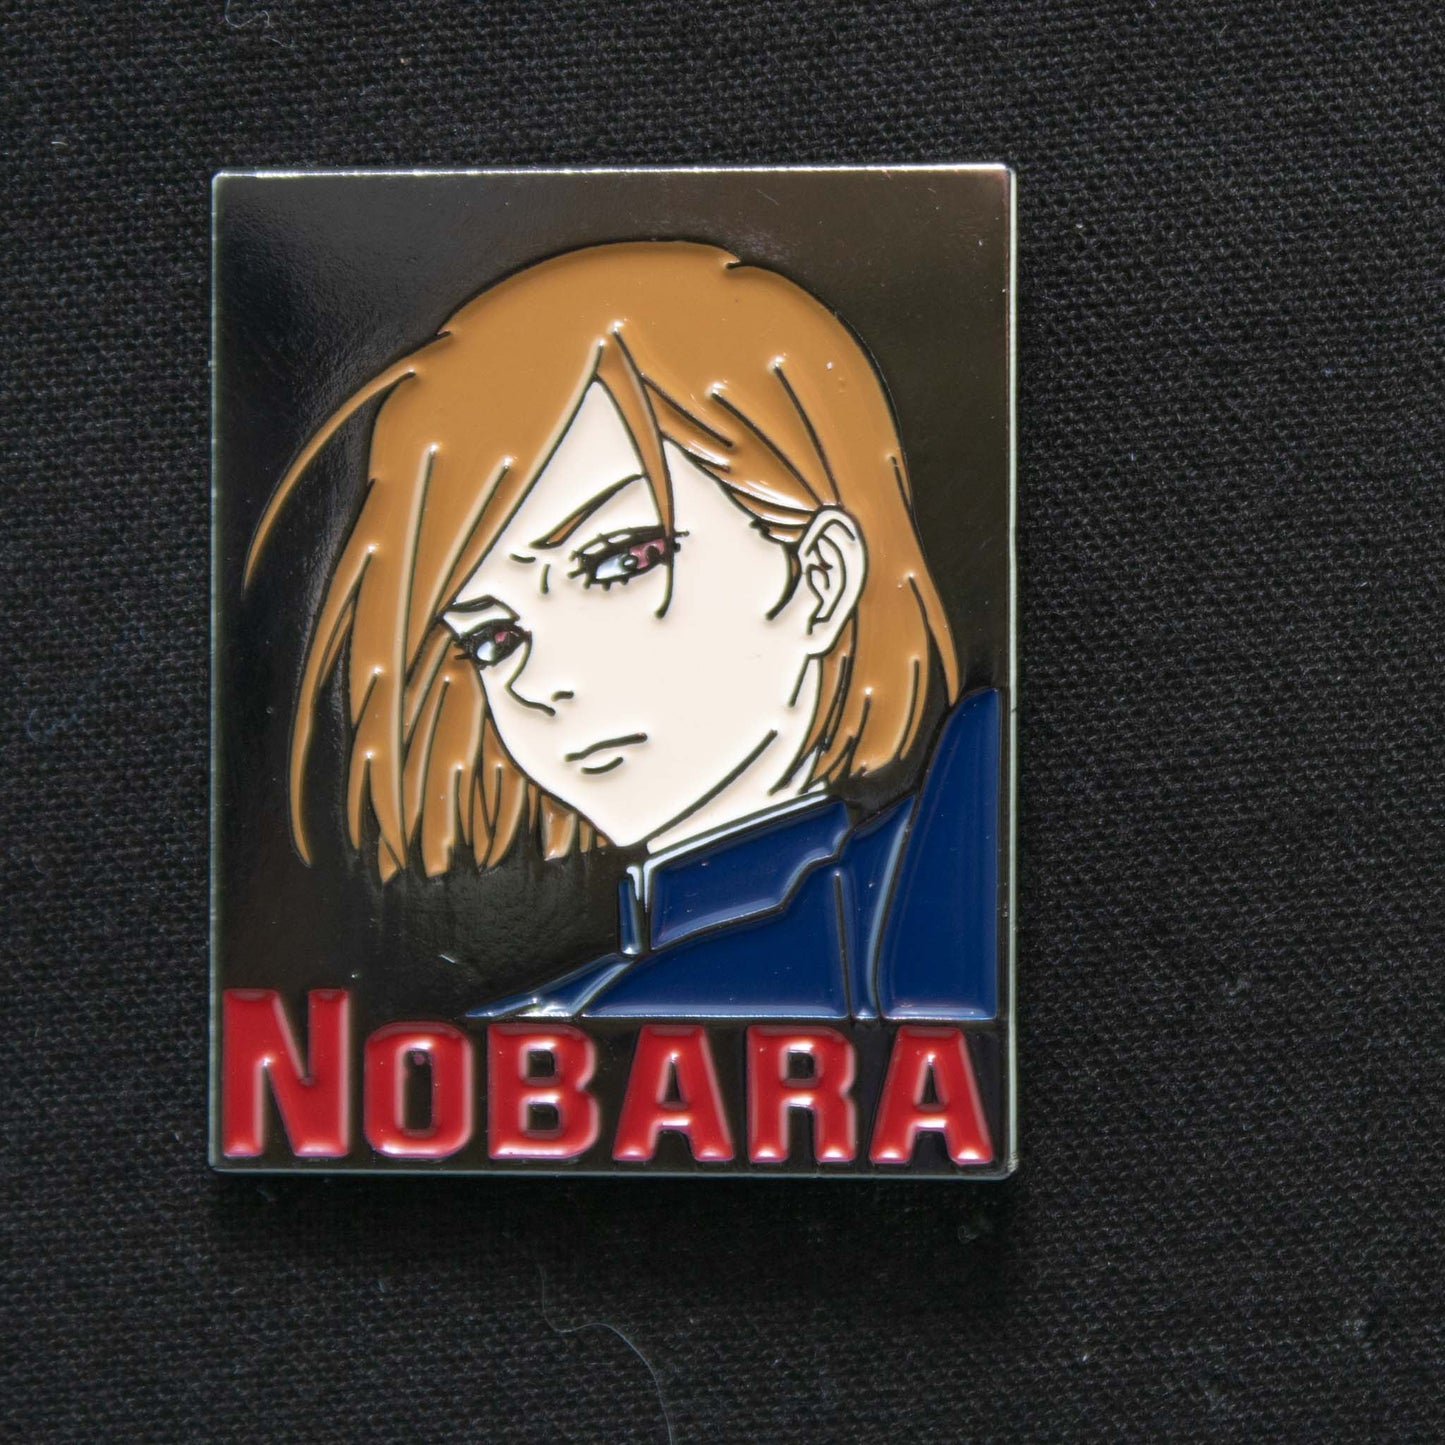 Nobara (Jujutsu Kaisen) Enamel Pin